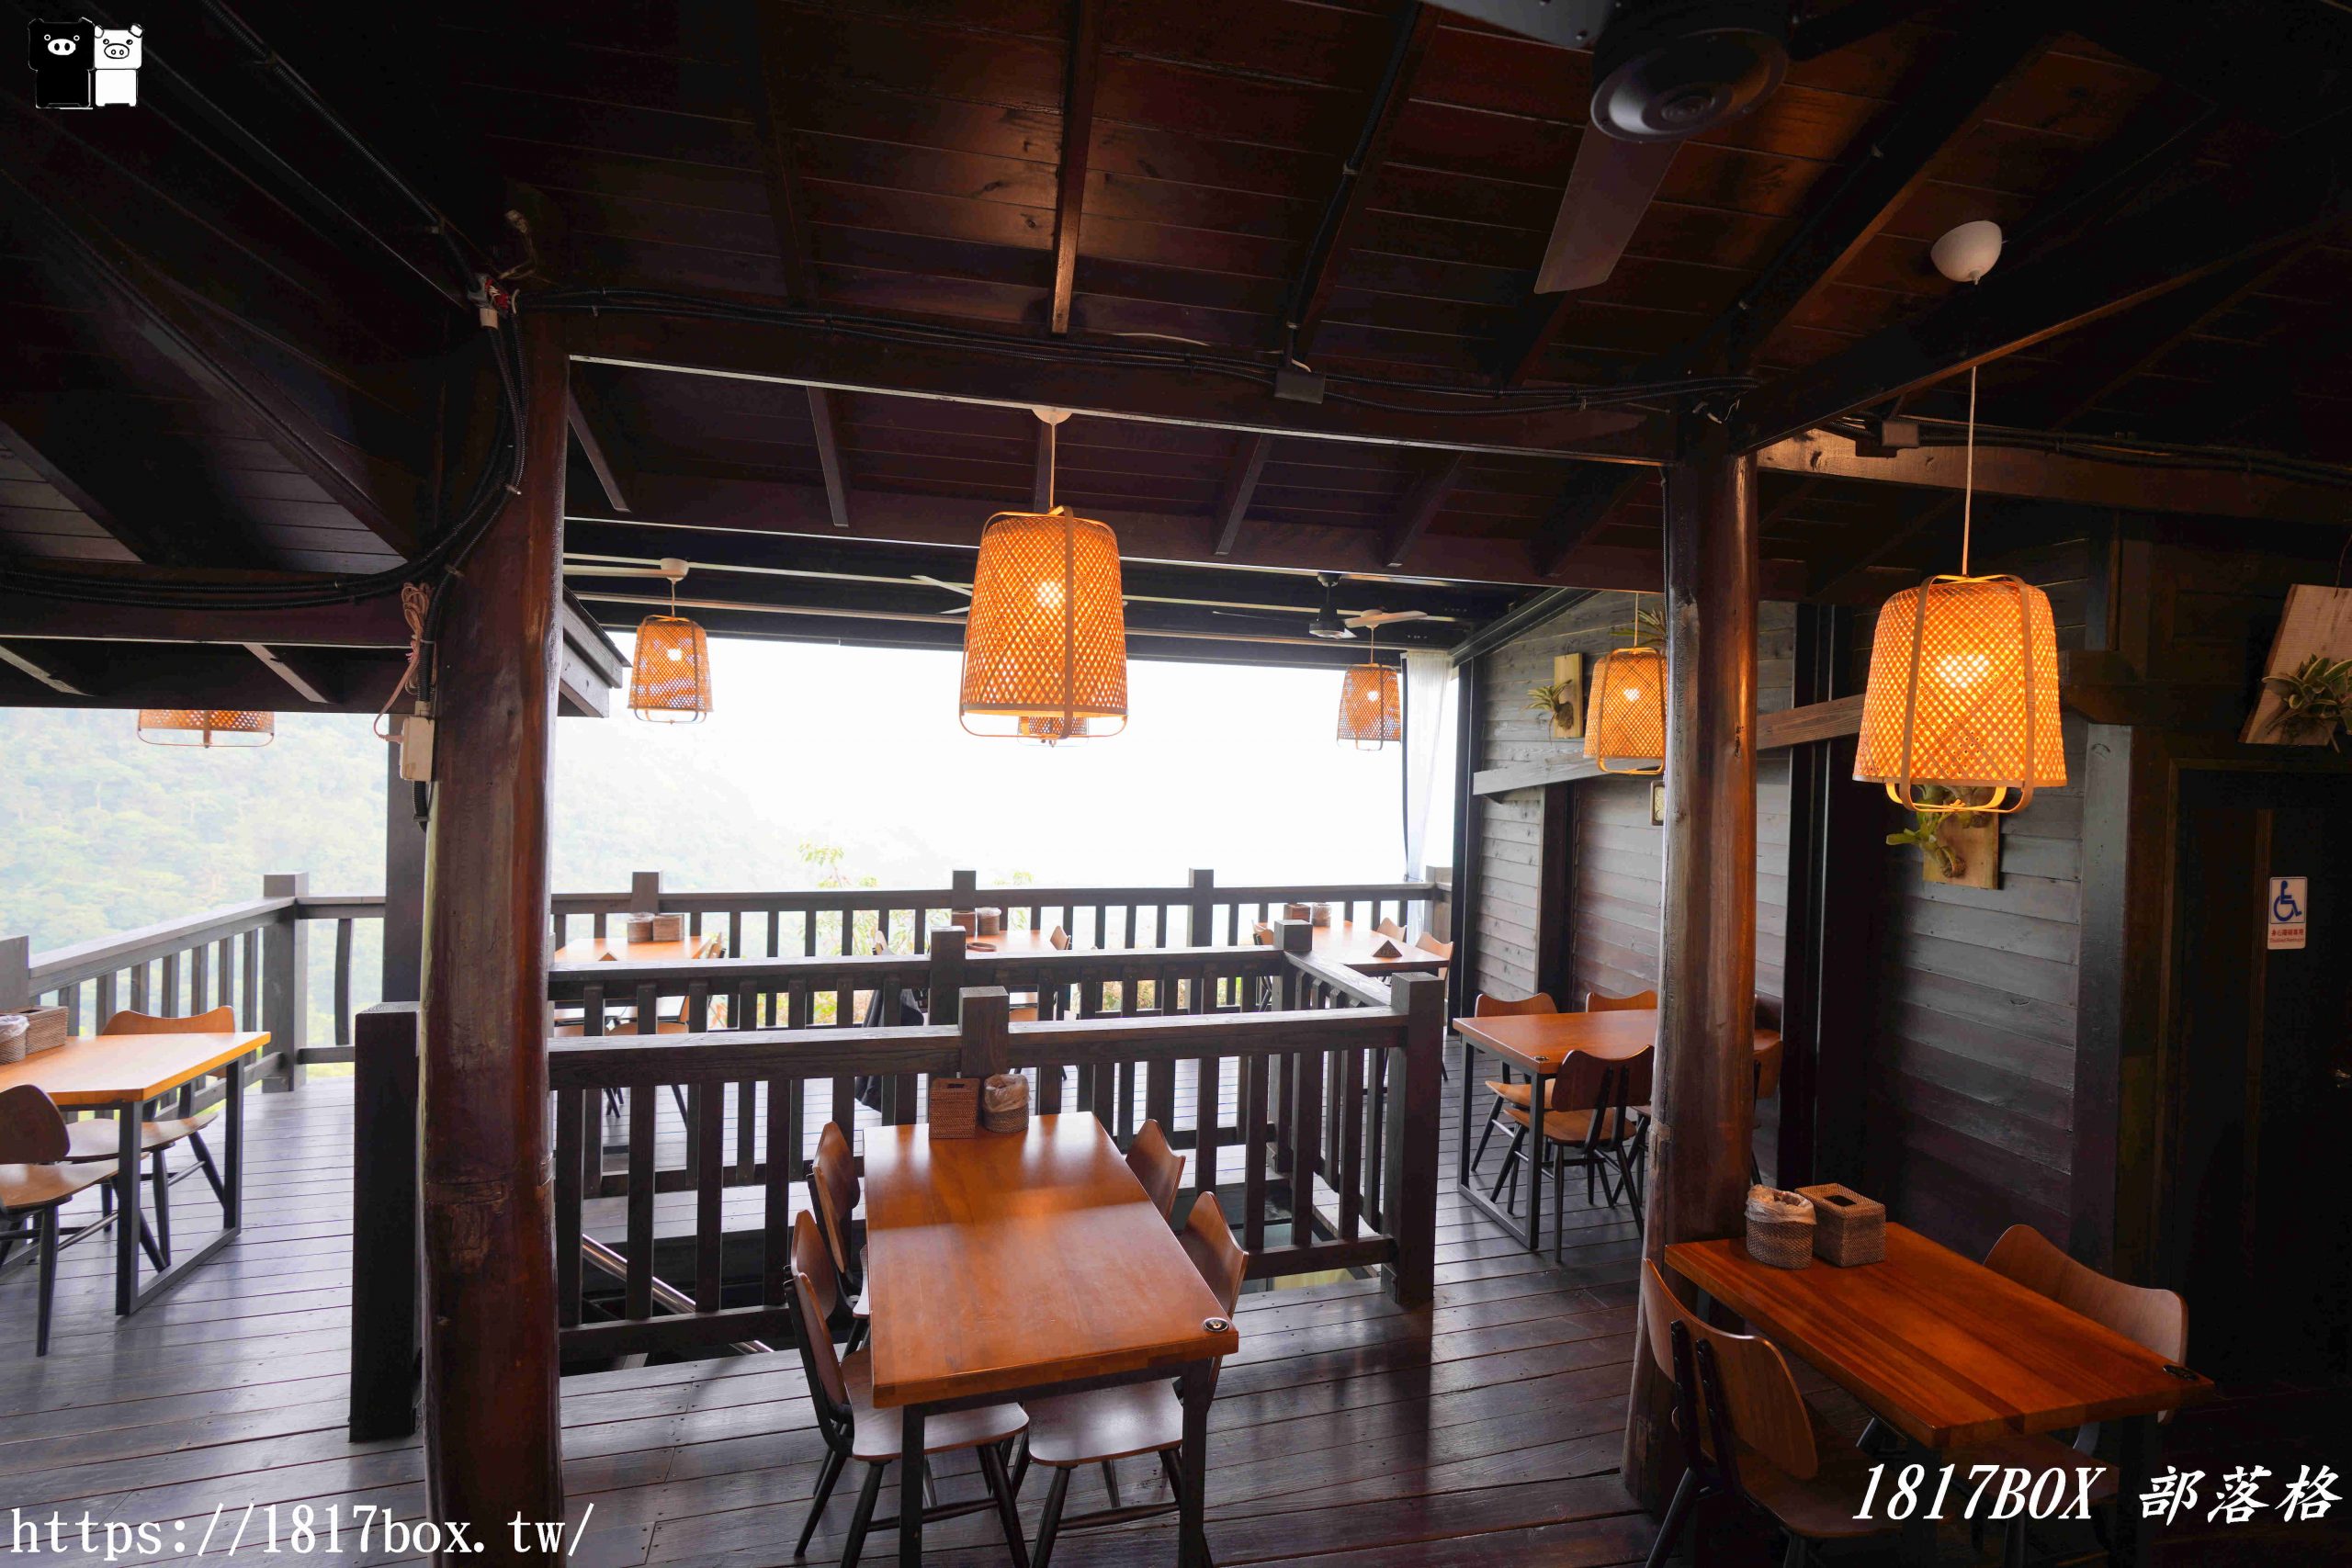 【嘉義。阿里山】游芭絲鄒宴餐廳-YUPASU Tsou Restaurant。採擷自然原始的食材。利用柴燻、涼拌、溫煨保留原味。鄒族風味餐